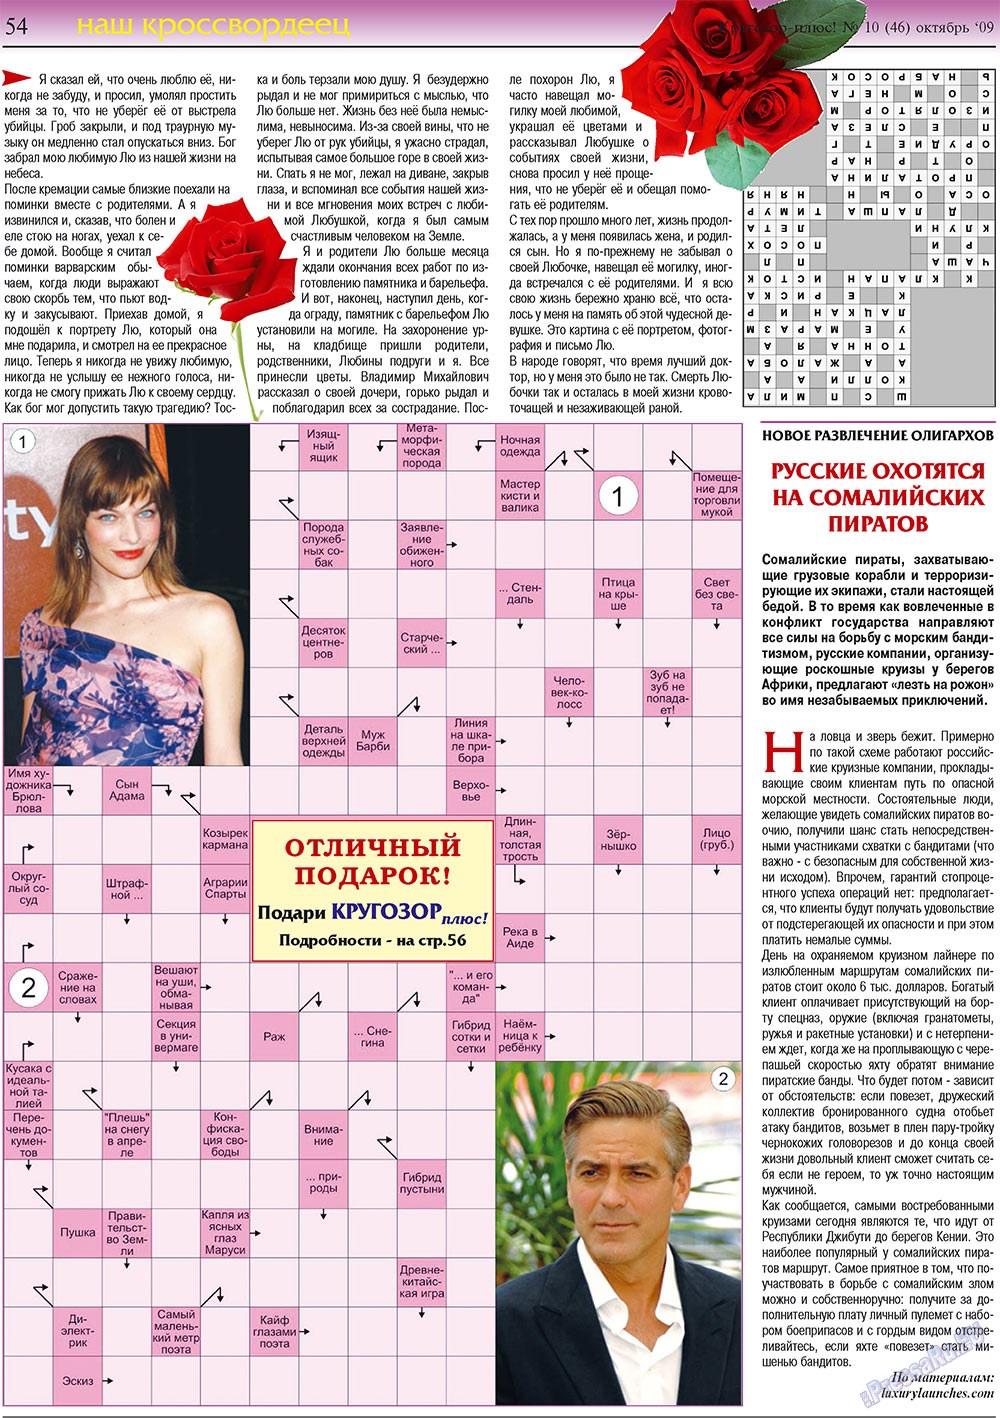 Кругозор плюс!, газета. 2009 №10 стр.54